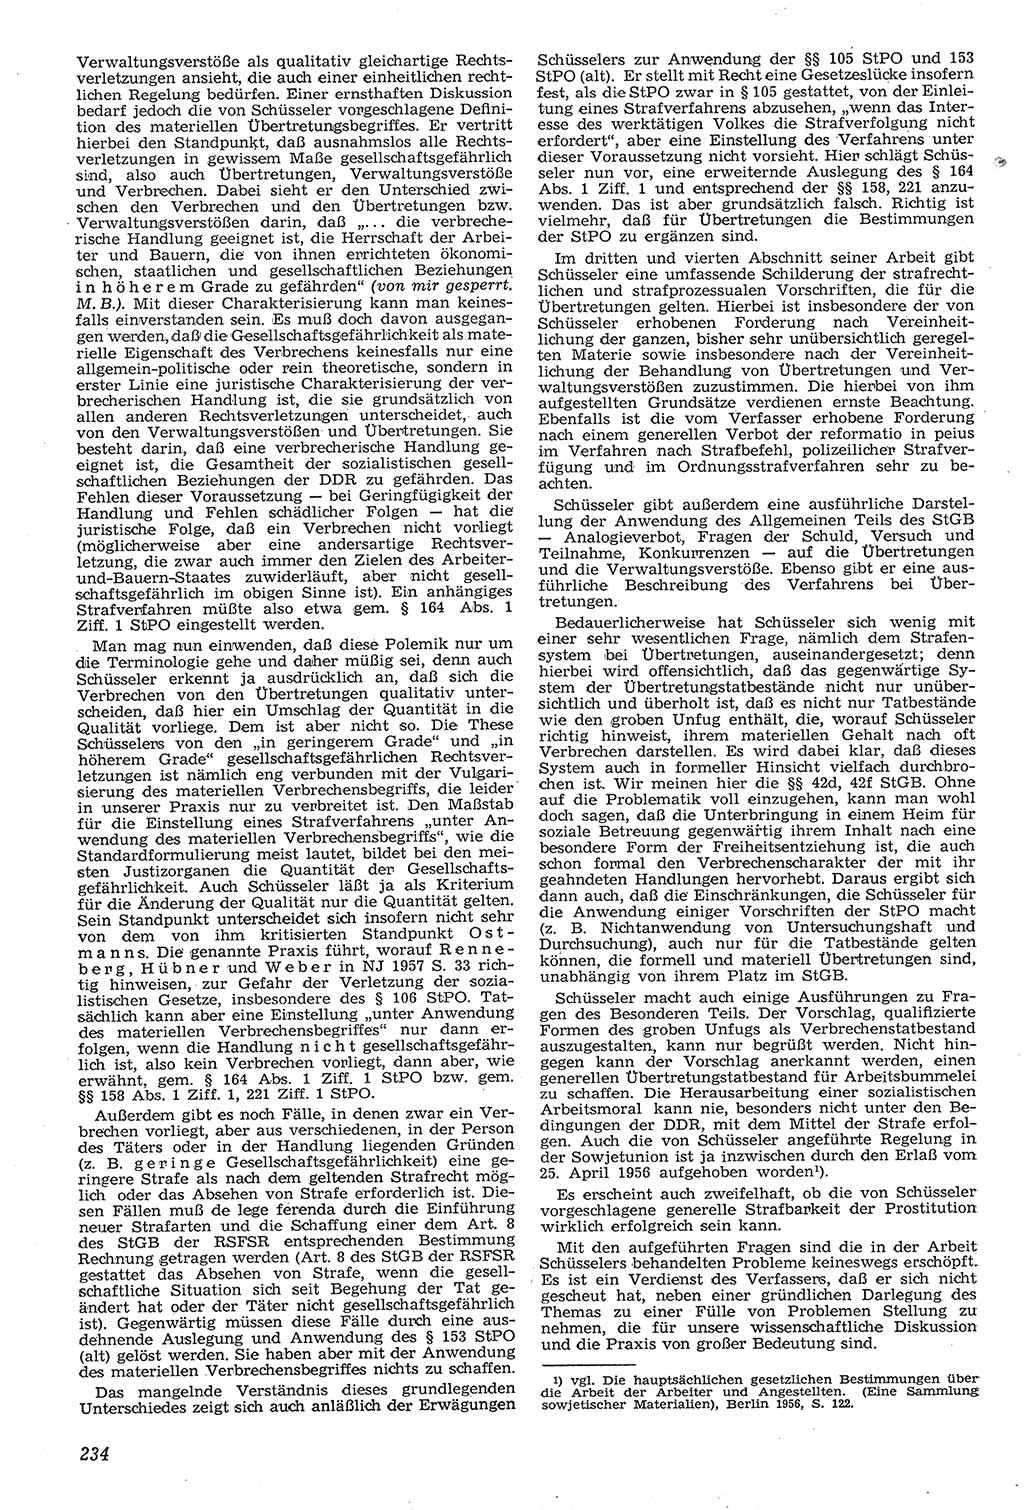 Neue Justiz (NJ), Zeitschrift für Recht und Rechtswissenschaft [Deutsche Demokratische Republik (DDR)], 11. Jahrgang 1957, Seite 234 (NJ DDR 1957, S. 234)